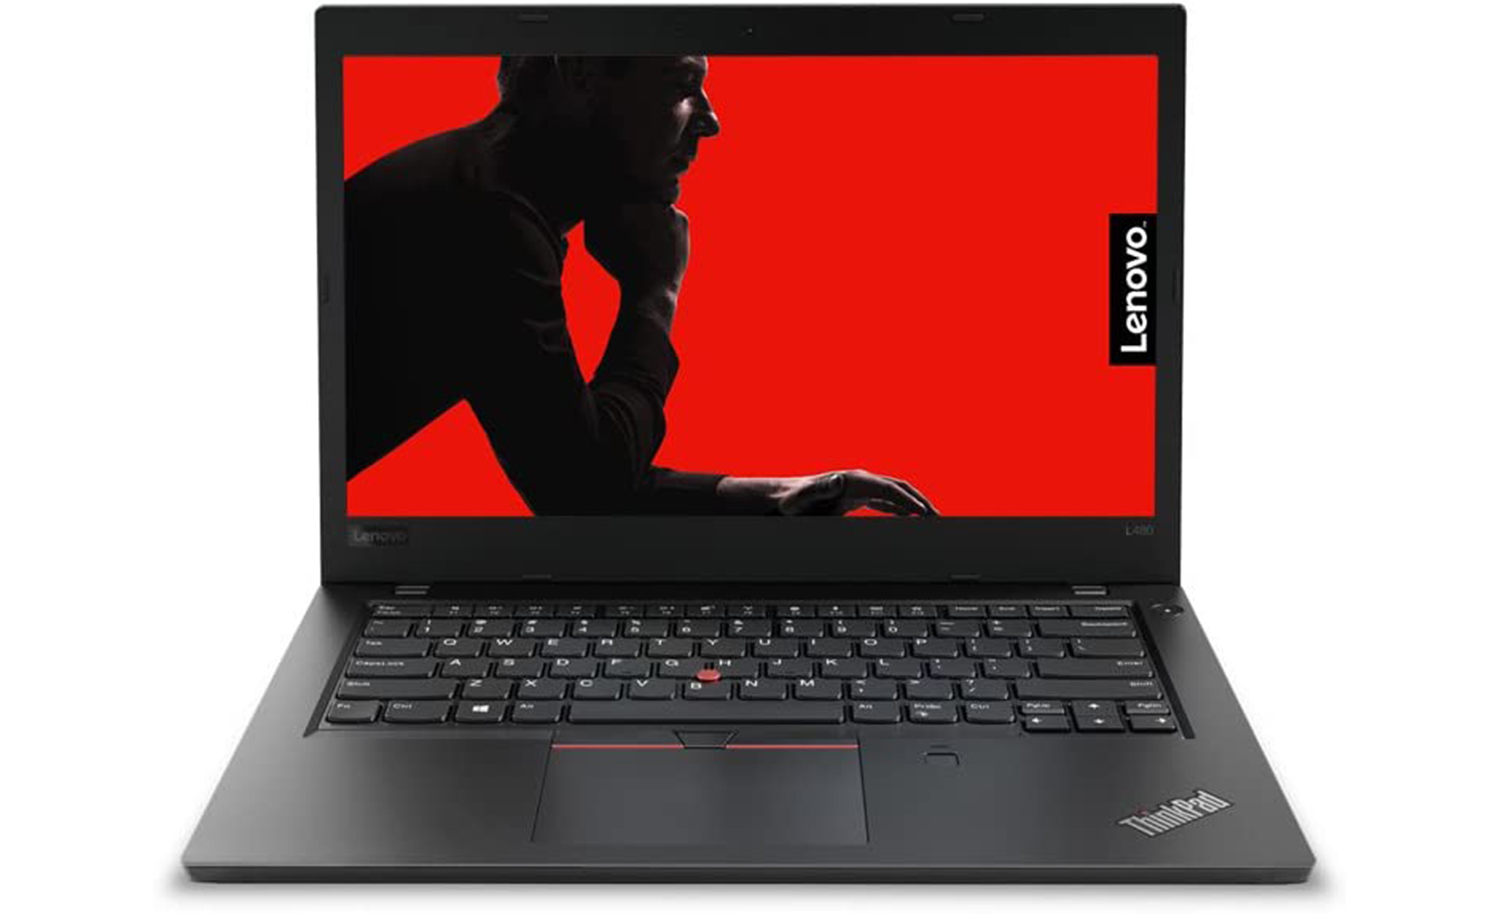 Lenovo ThinkPad L480 Intel Core i7 8th Gen 8GB RAM 256GB SSD Windows 10 Pro